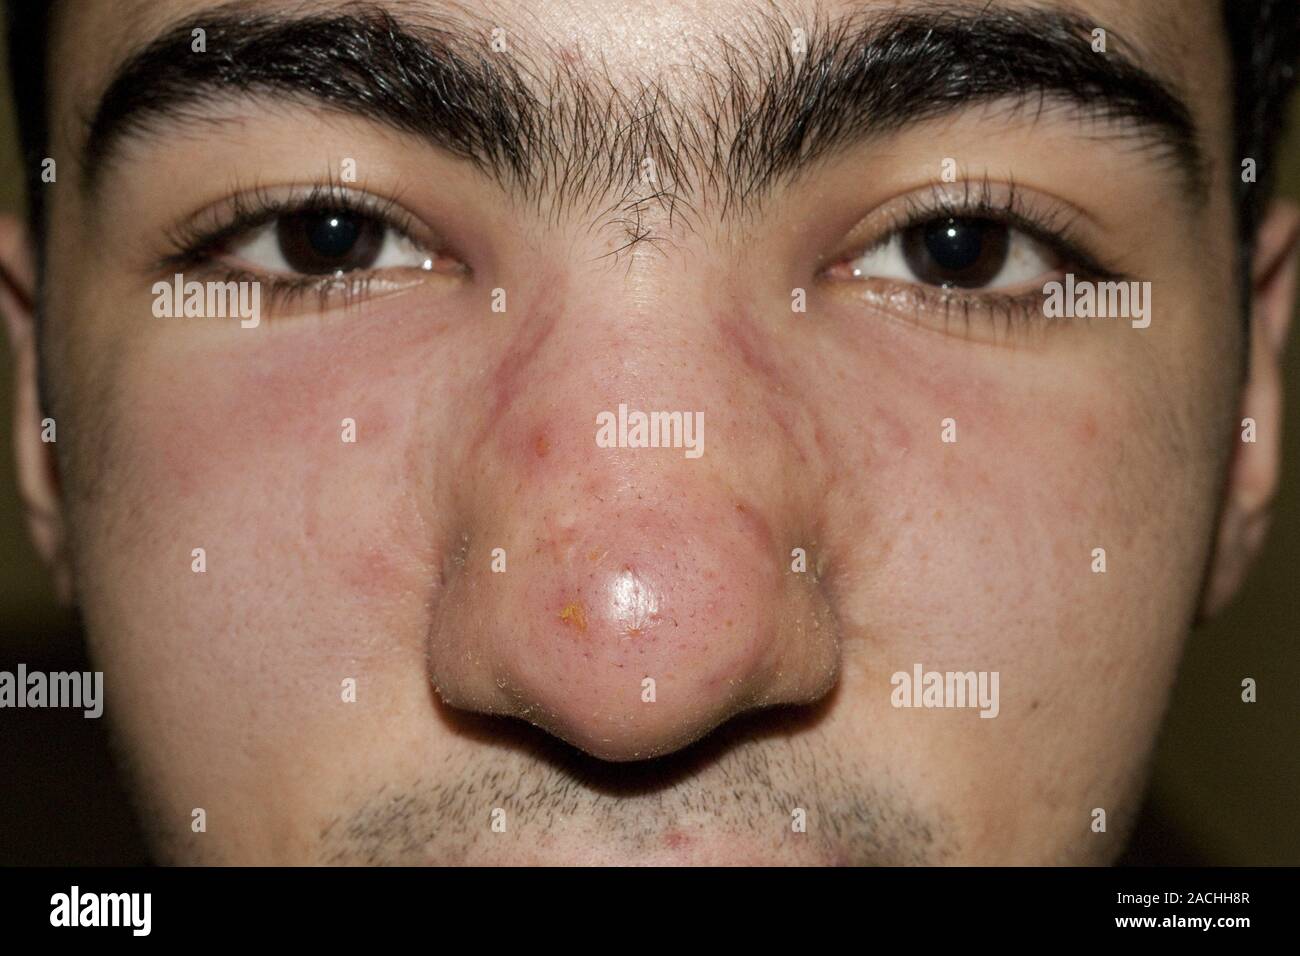 Acne cistica. Il rigonfiamento del naso e la zona circostante a causa di  acne cistica. L'acne è un nome generico dato ad un disturbo della pelle in  cui le ghiandole sebacee glan